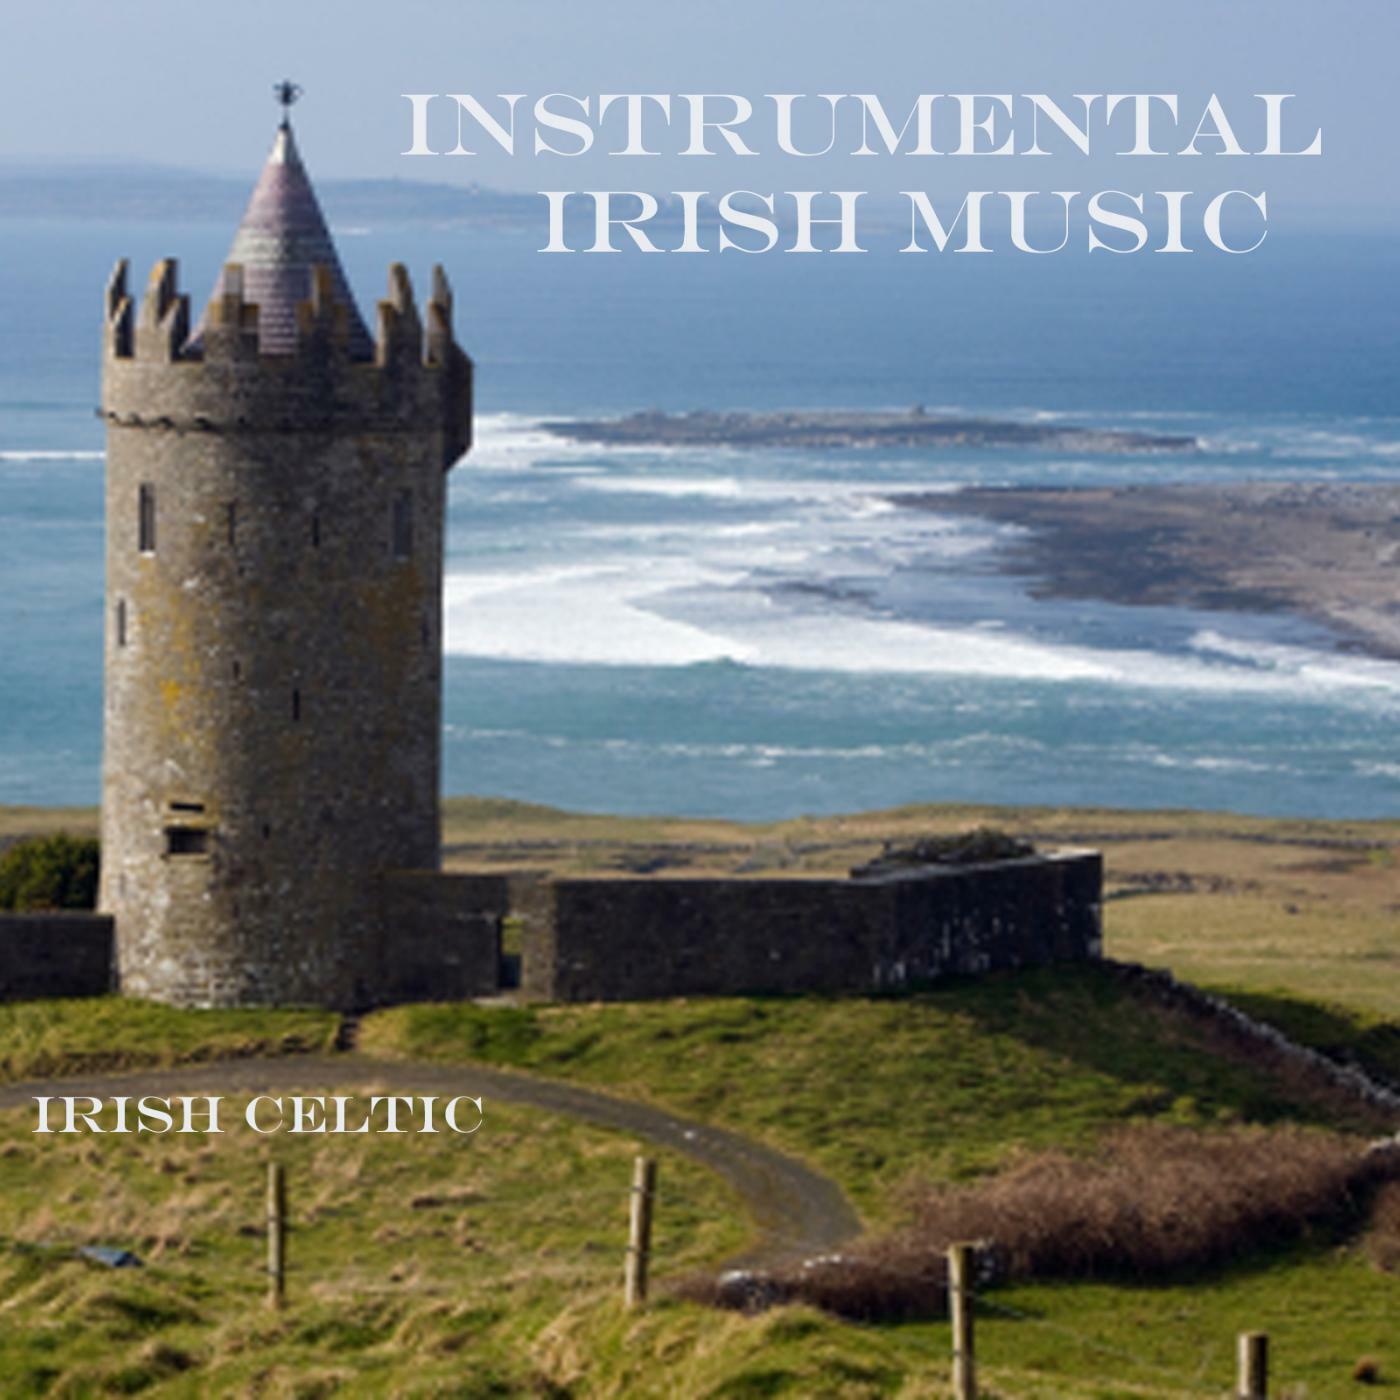 Irish Celtic Music - Instrumental Irish Music - Irish Celtic Music | iHeart